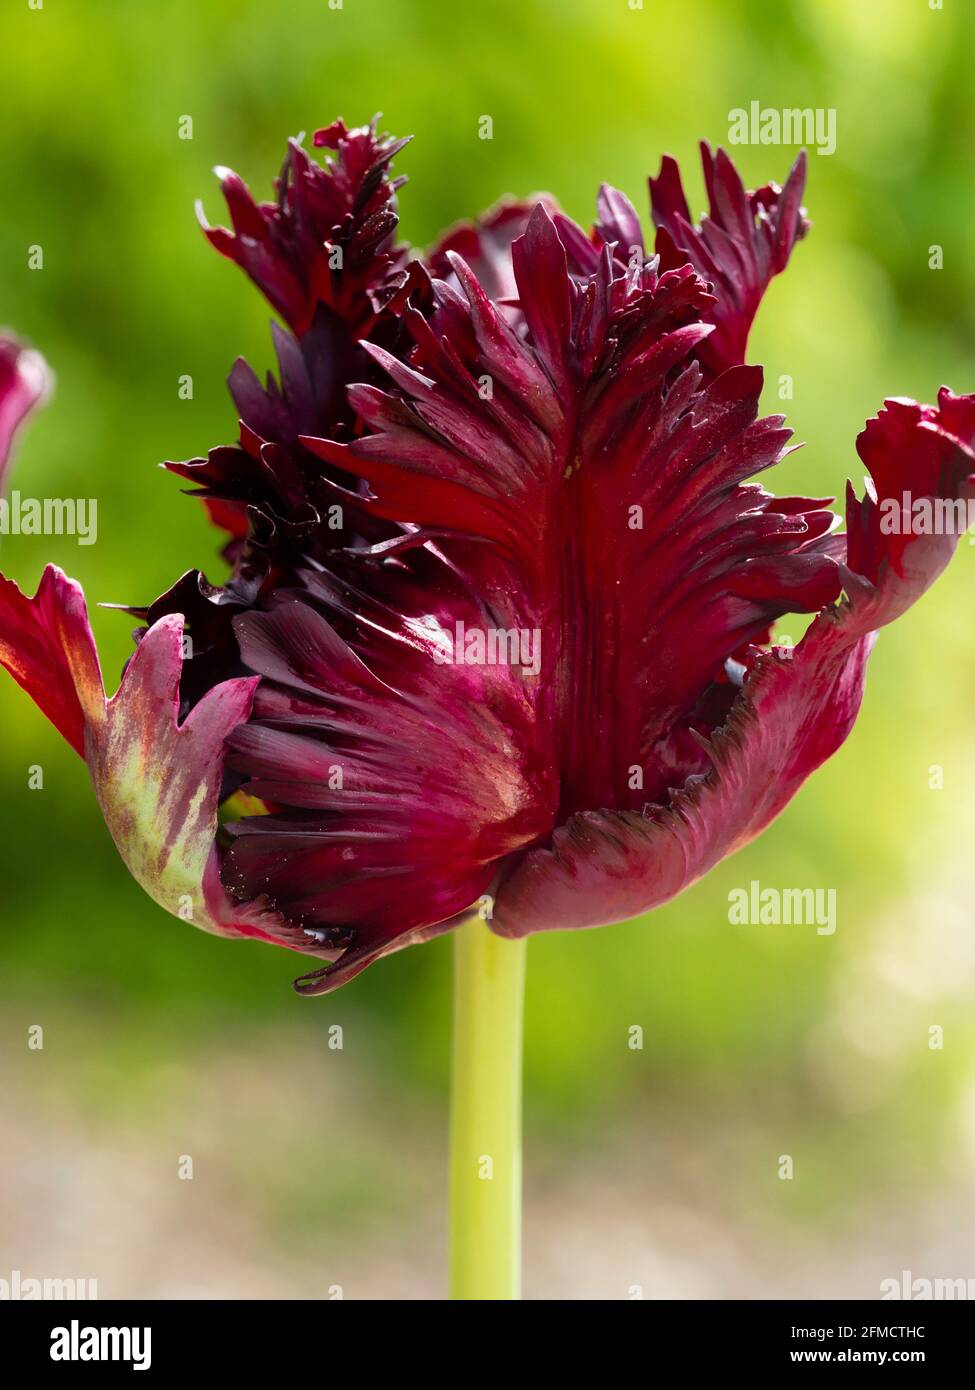 NEGRITA tulipe x 10 ampoules Belle violet foncé Triumph Tulip Fleurs 